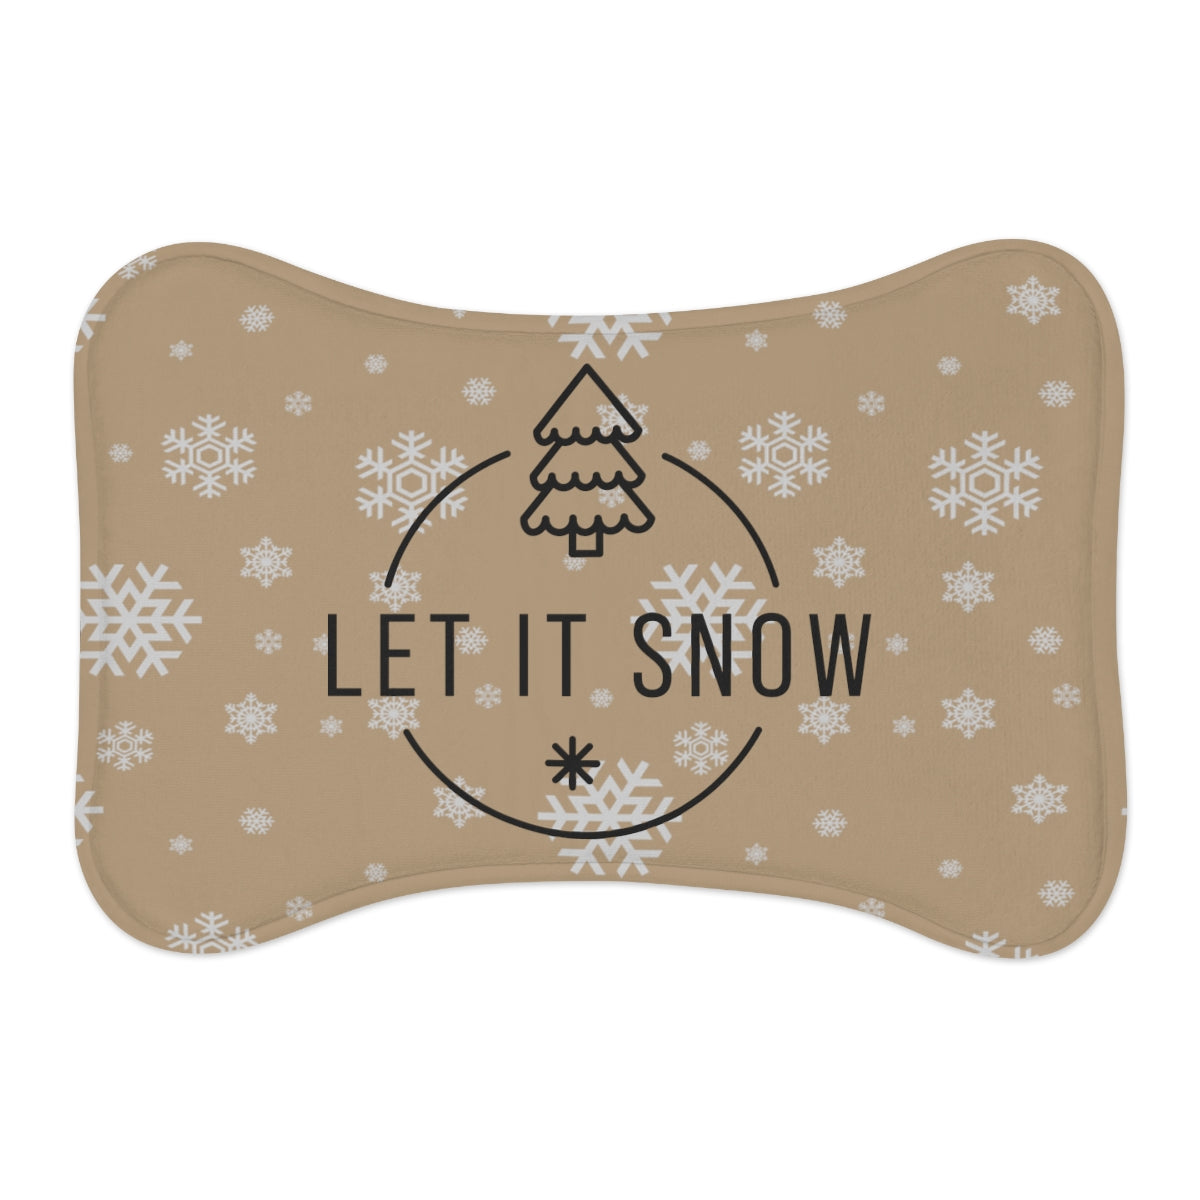 "Let It Snow" Pet Bowl Mats